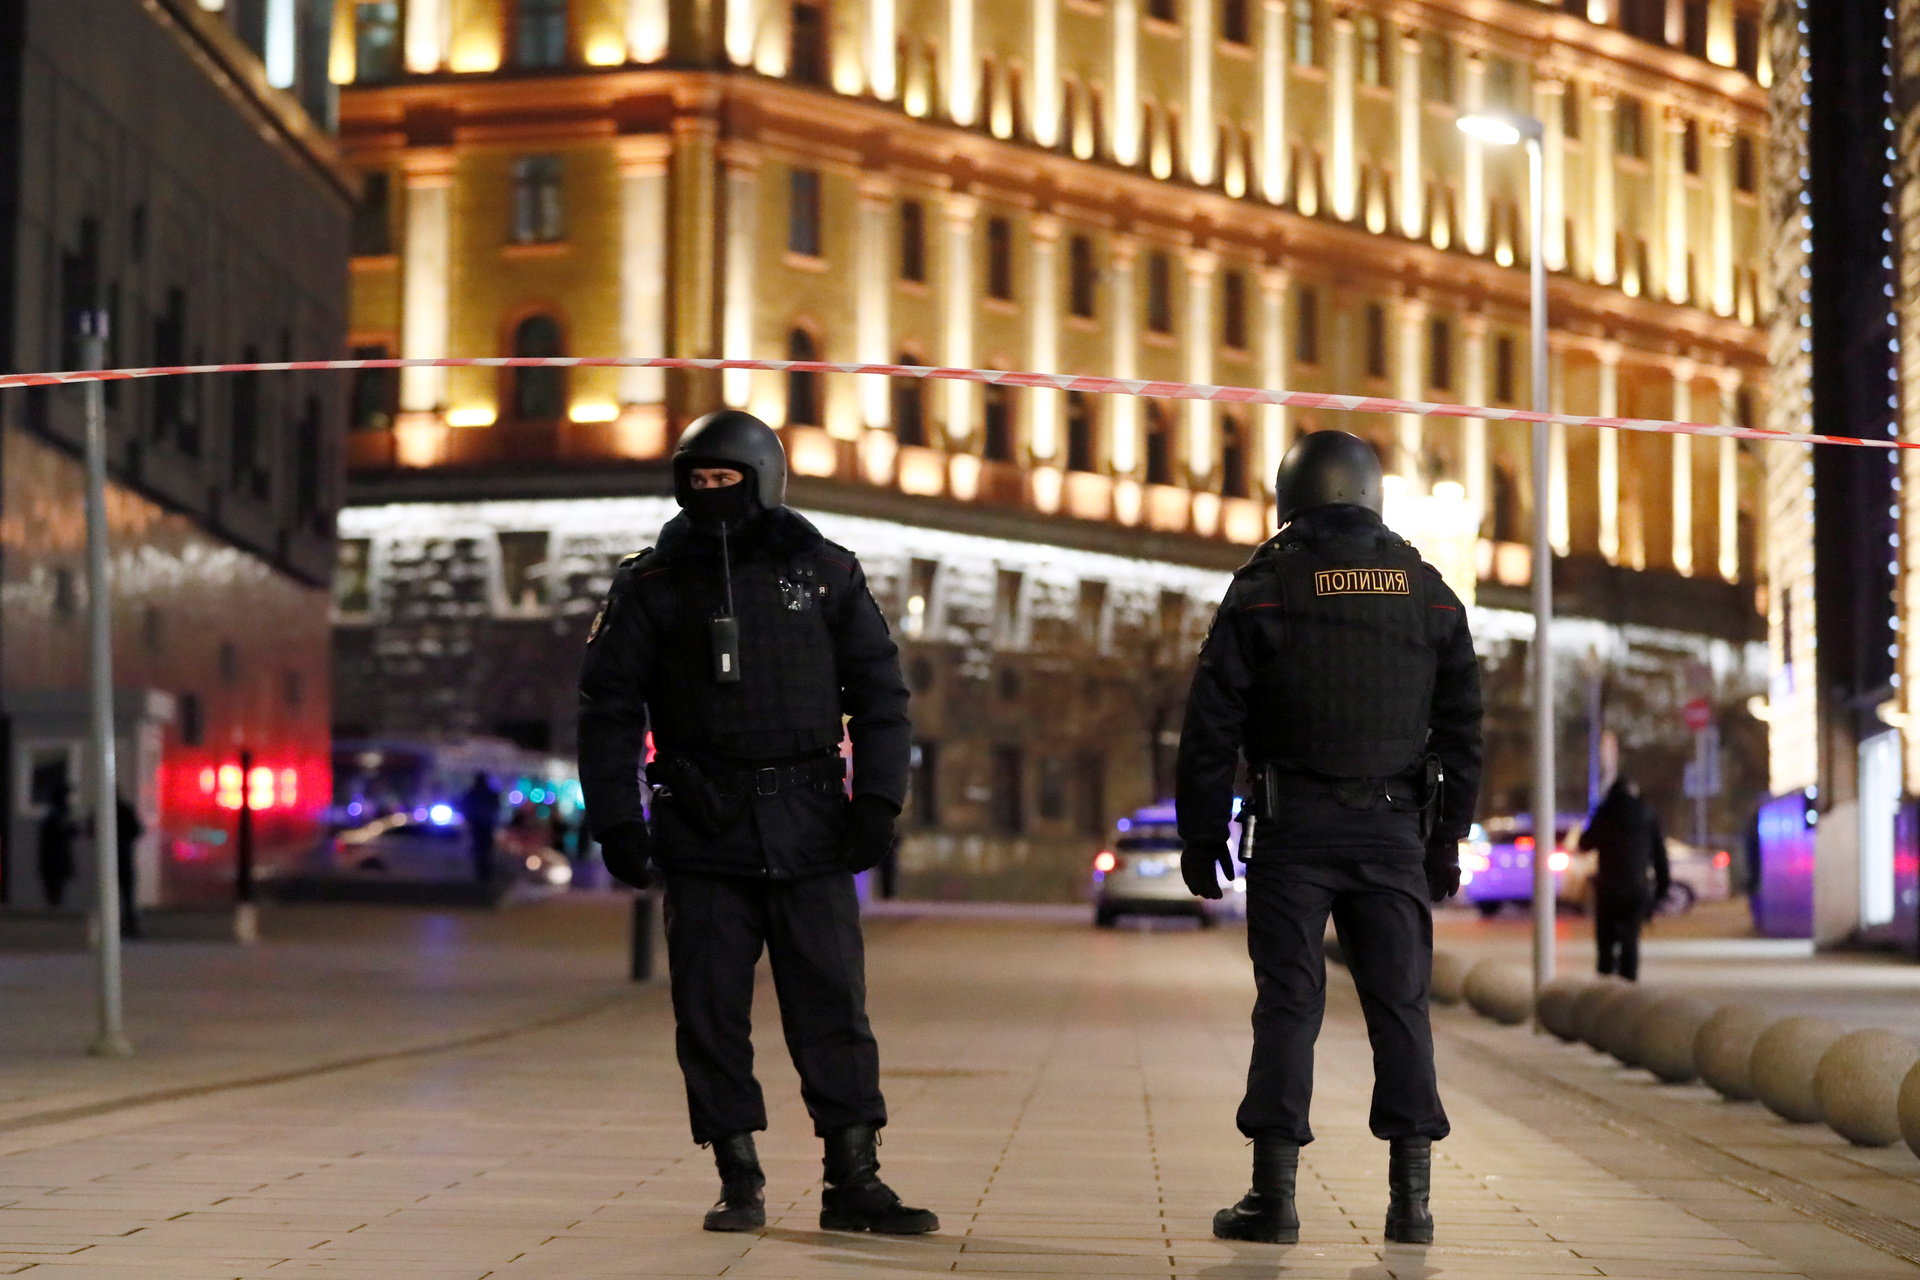 Картинки по запросу «Слышались автоматные очереди»: что известно о стрельбе у здания ФСБ на Лубянке